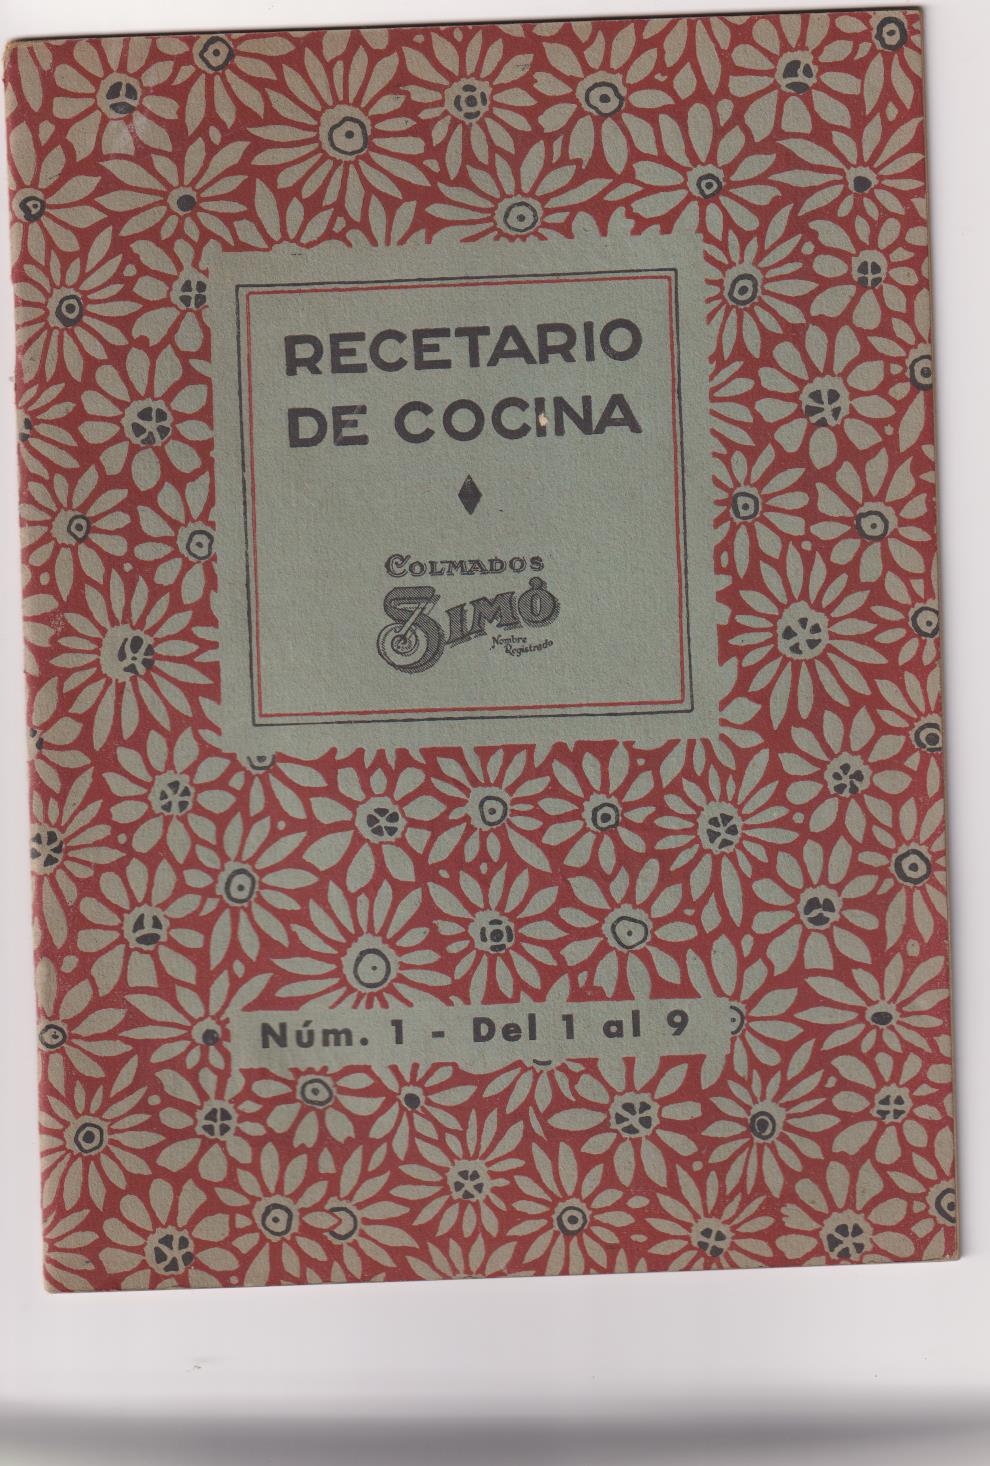 Recetario de Cocina nº 1. Colmados Simó. Recetas 1 a 9 (21x15) 22 páginas con publicidad. 1940